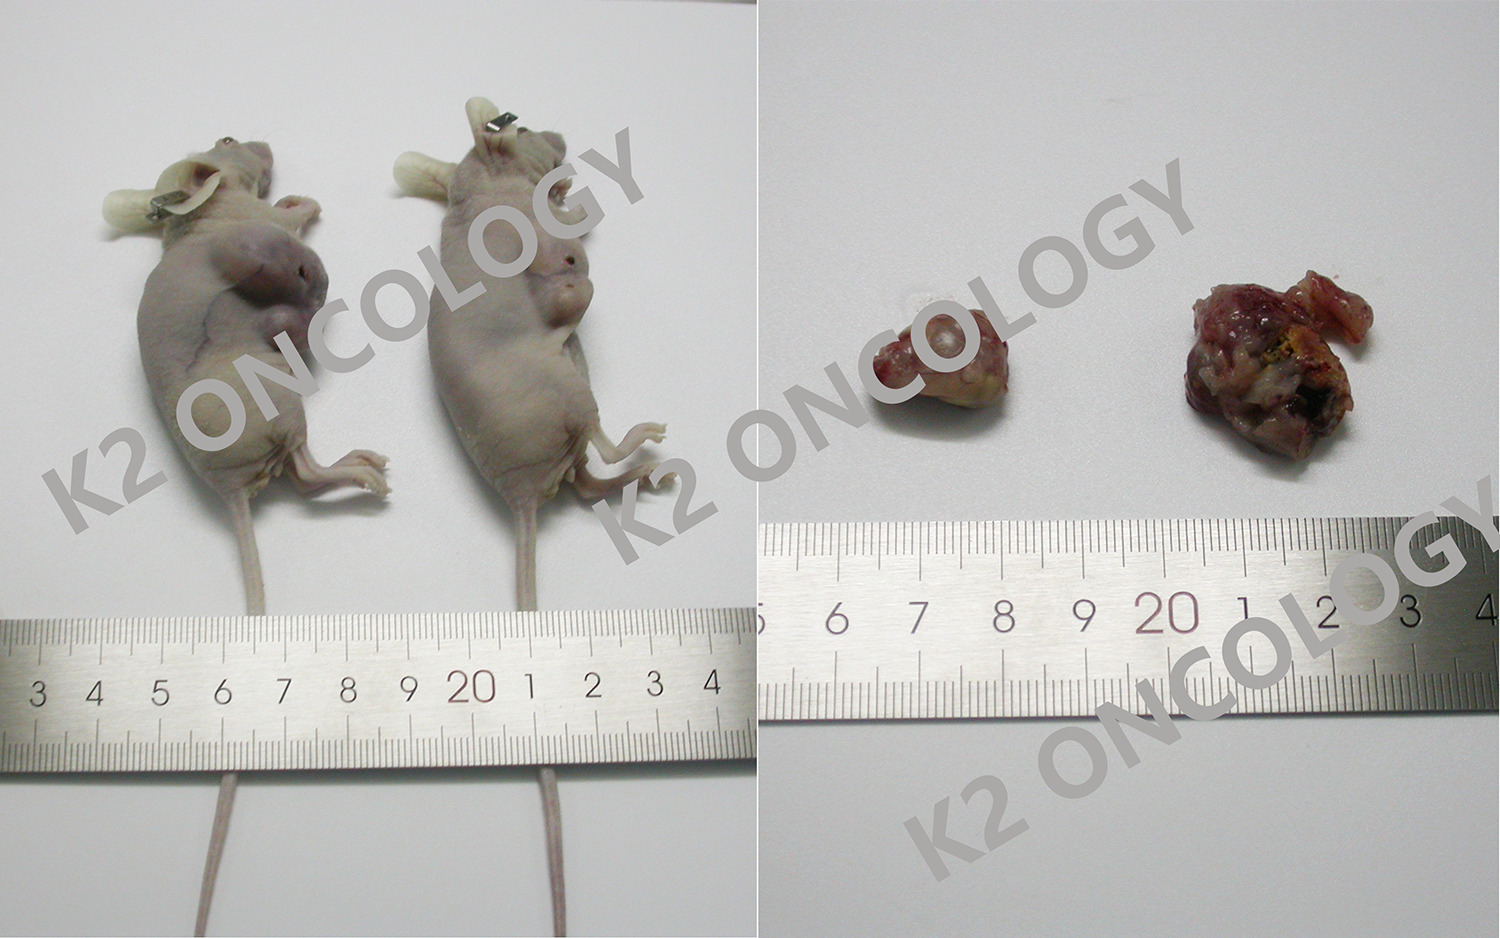 胃癌类器官KO-66744 PDOX小鼠体内成瘤照片.png